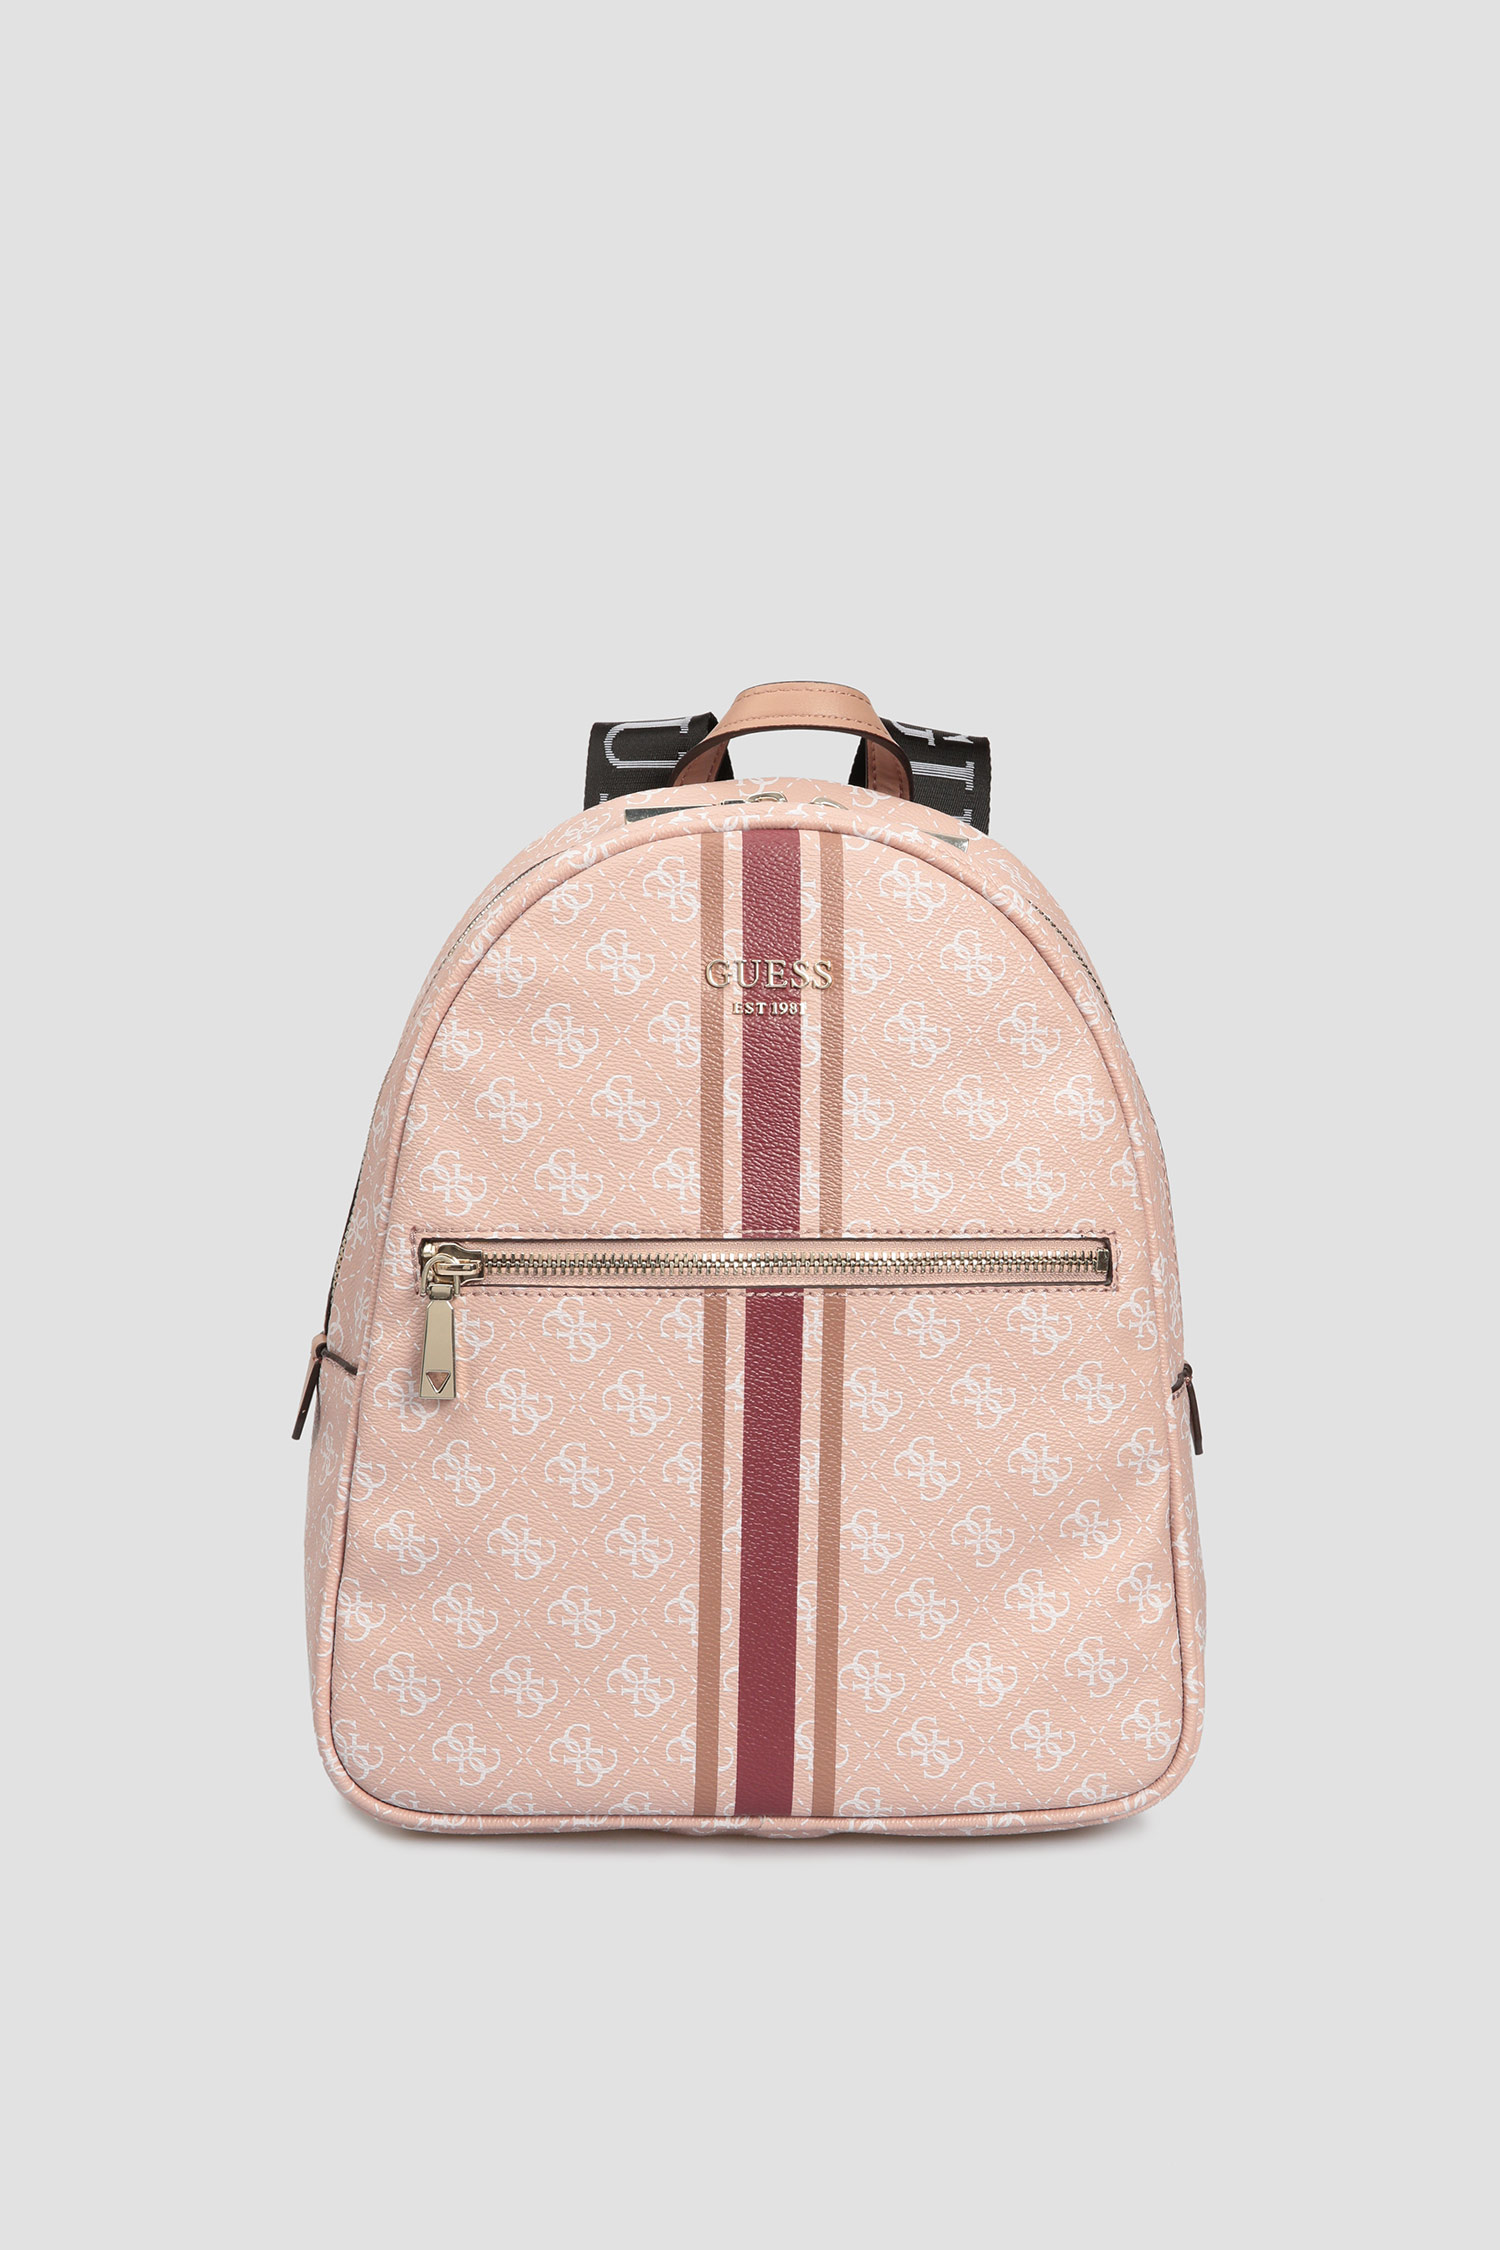 Пудровый рюкзак с узором для девушек Guess HWSS69.95320;ROS